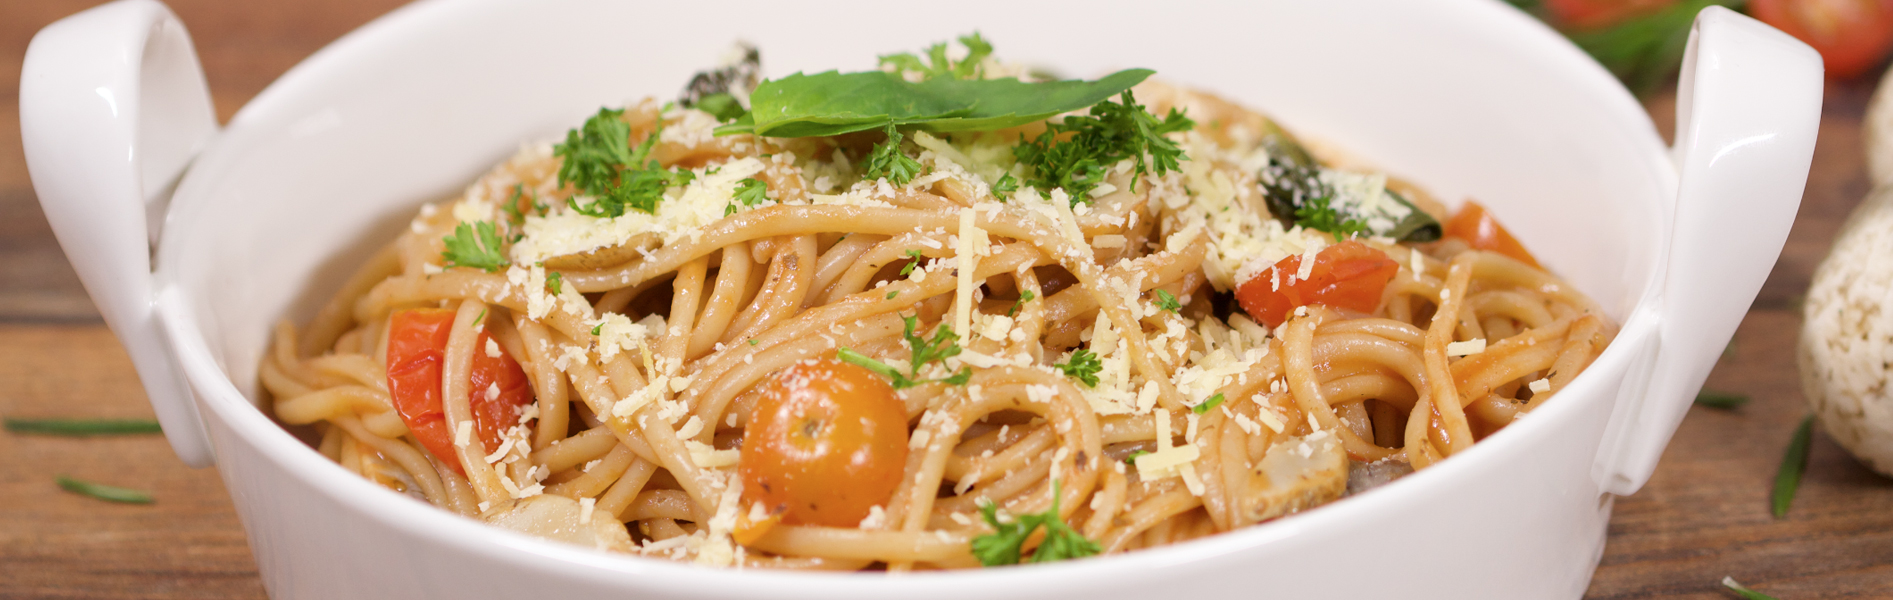 Spaghetti Doria con Tomates Cherry, Champiñones, Albahaca fresca y Salsa lista sabor Finas Hierbas